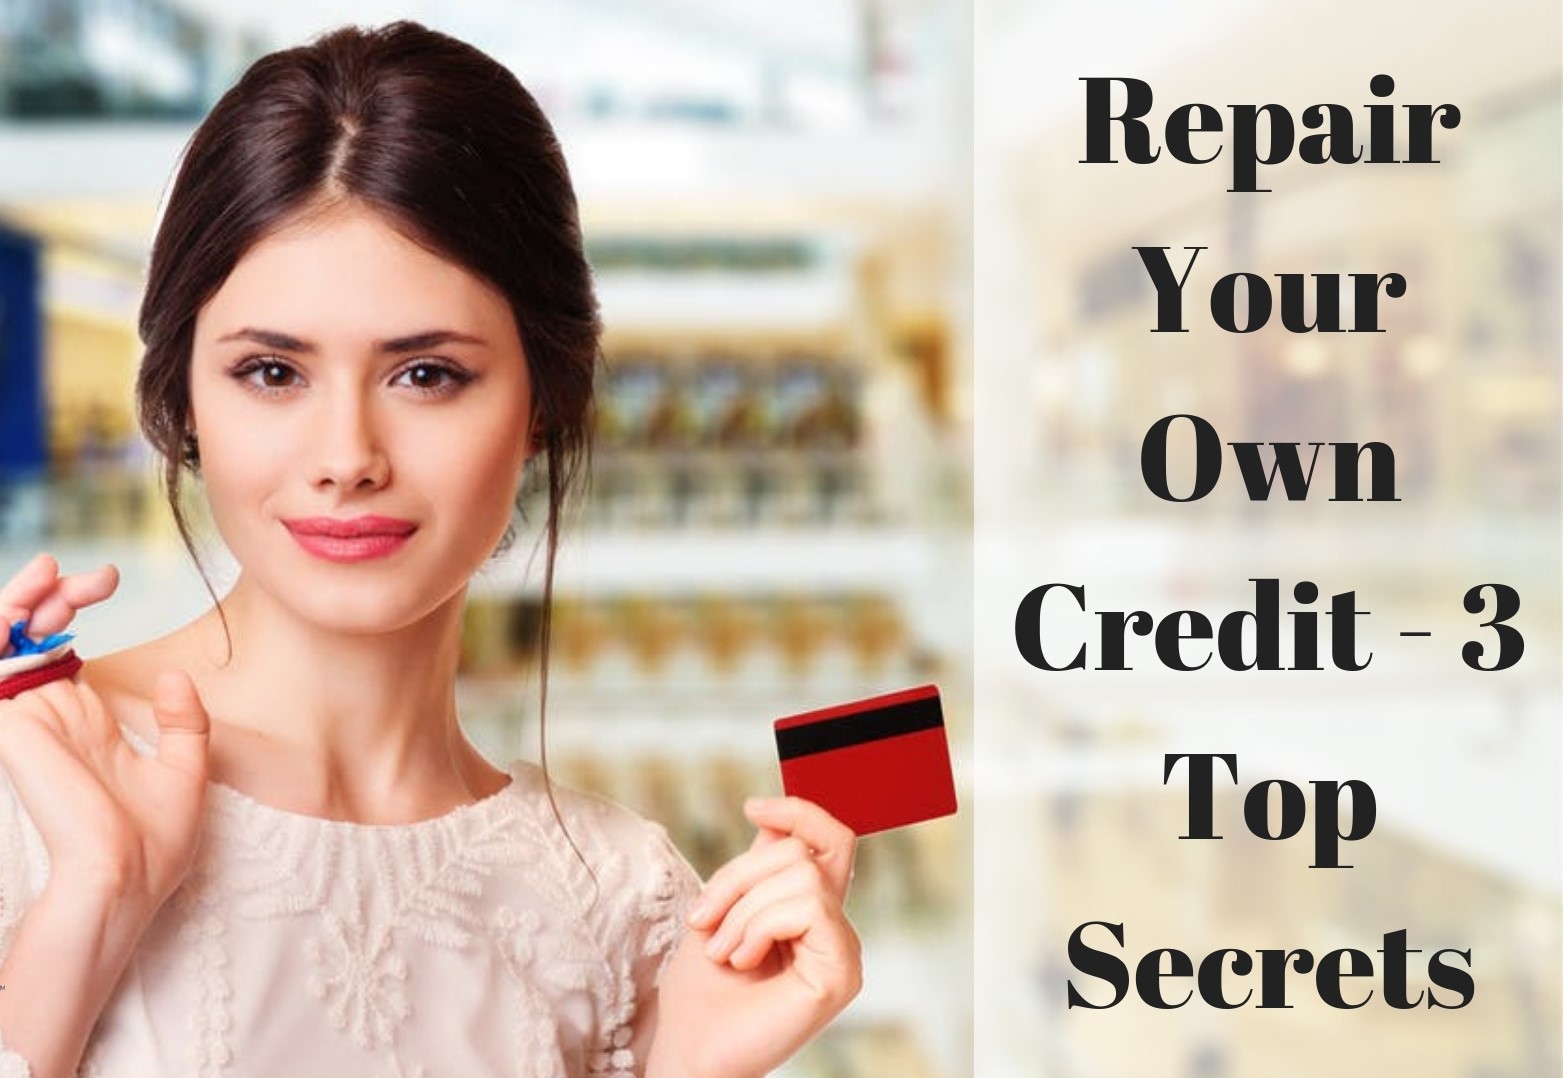 Repair Your Own Credit - 3 Top Secrets